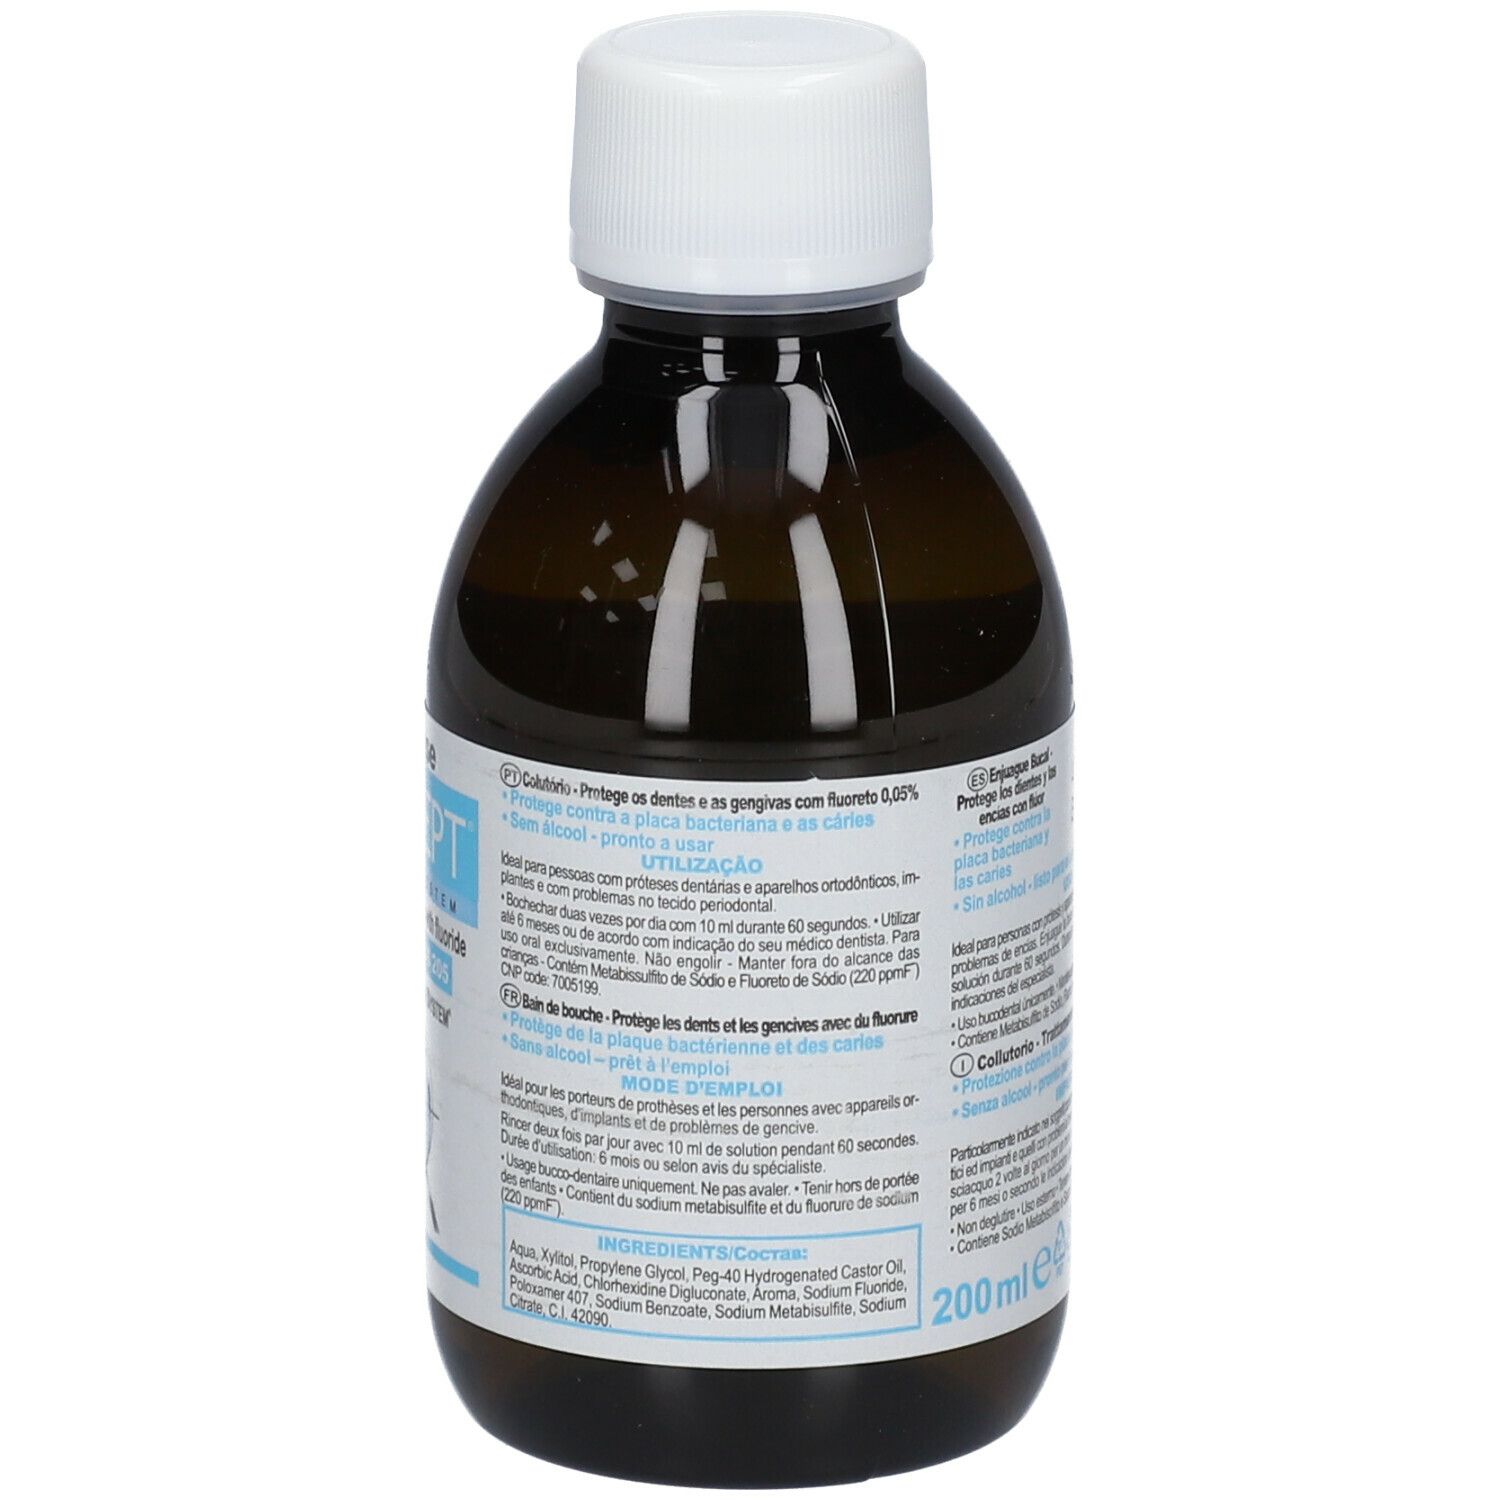 CURASEPT® Chlorhexidine 005% Mundwasser